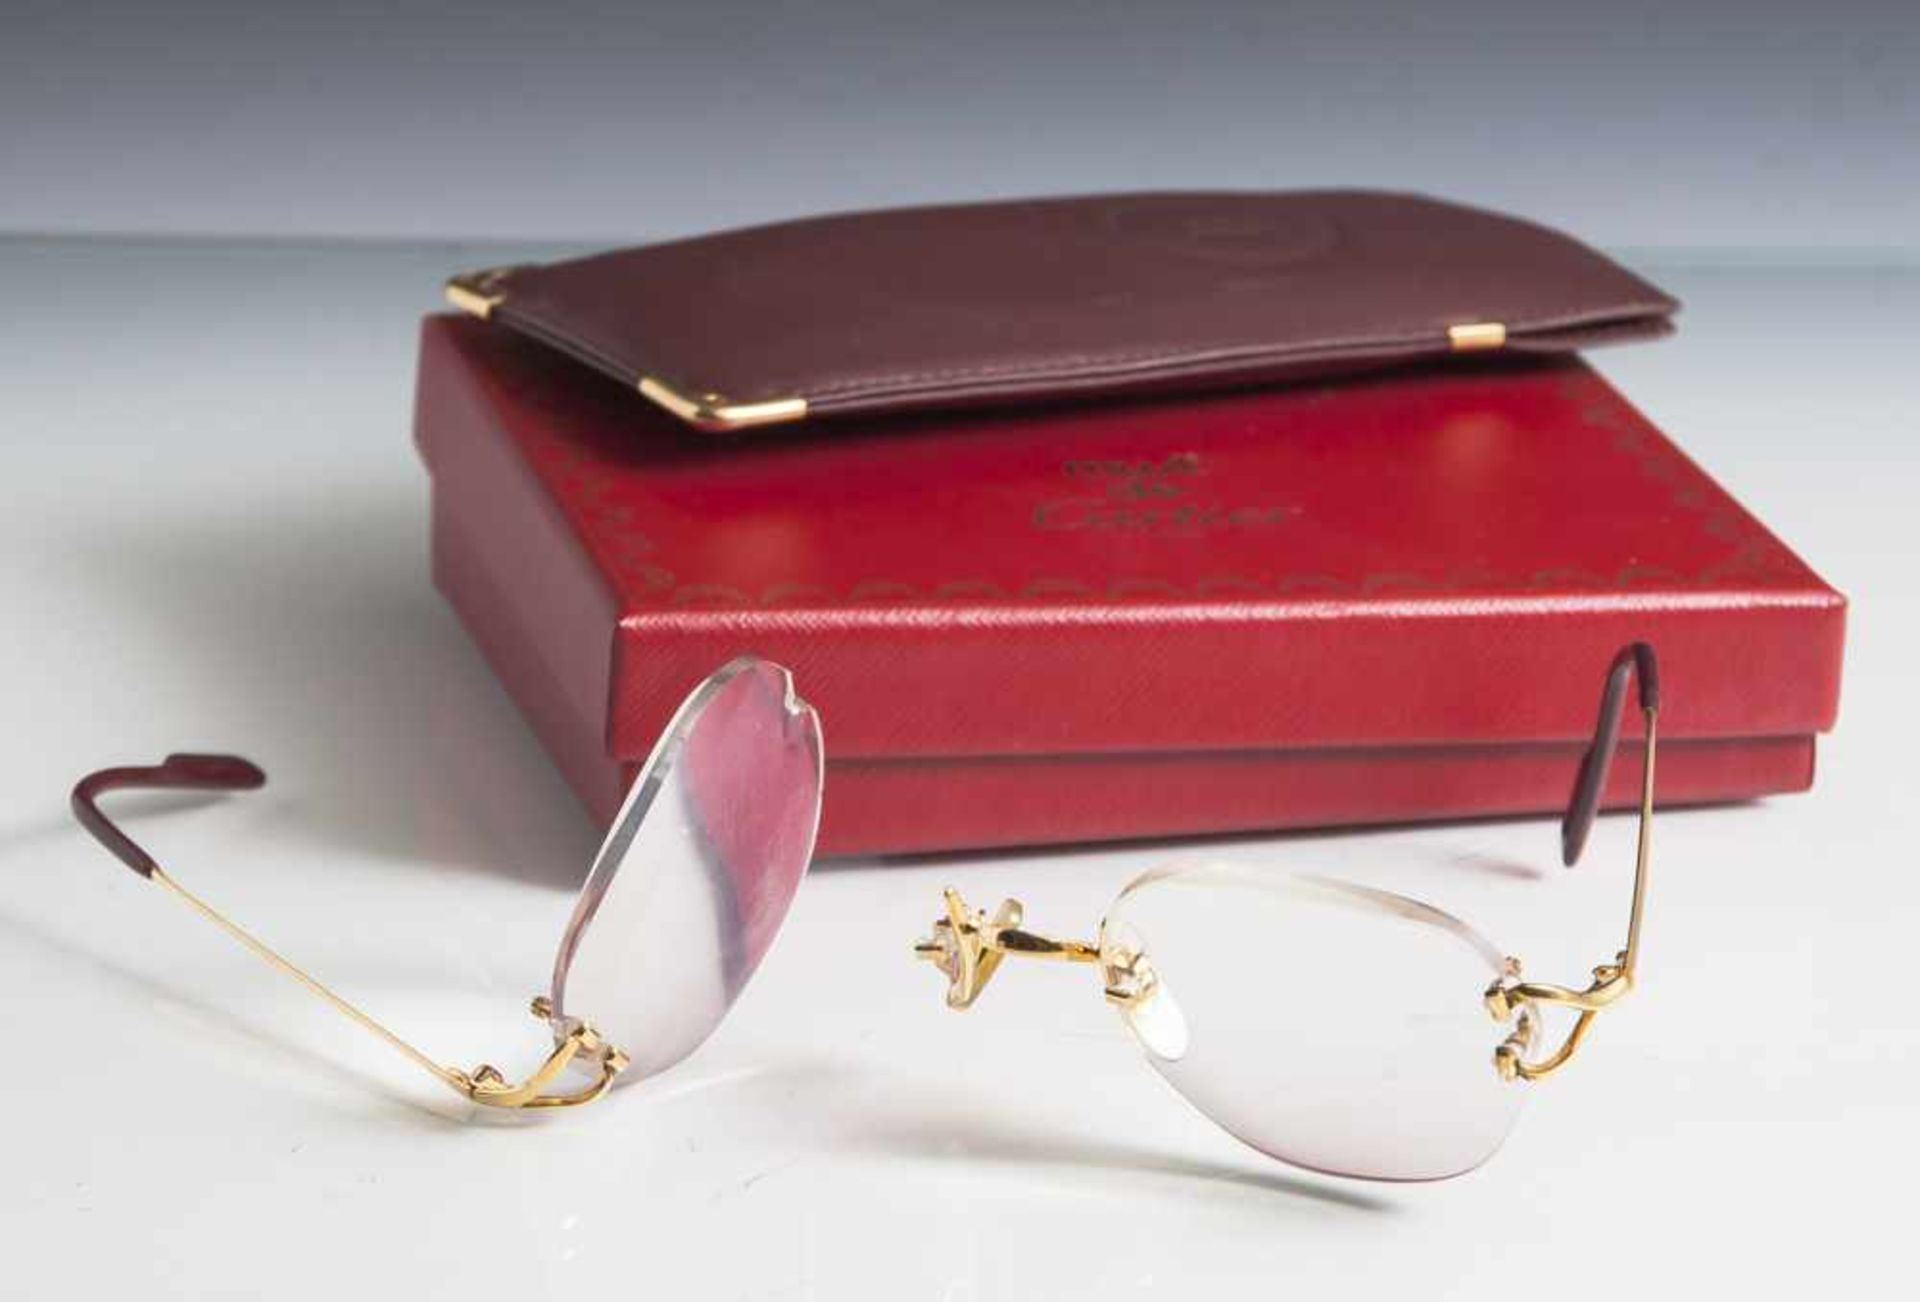 Brillengestell, Cartier, wohl Silber vergoldet, auf Innenseite des Bügels bez. "Cartier Paris Made